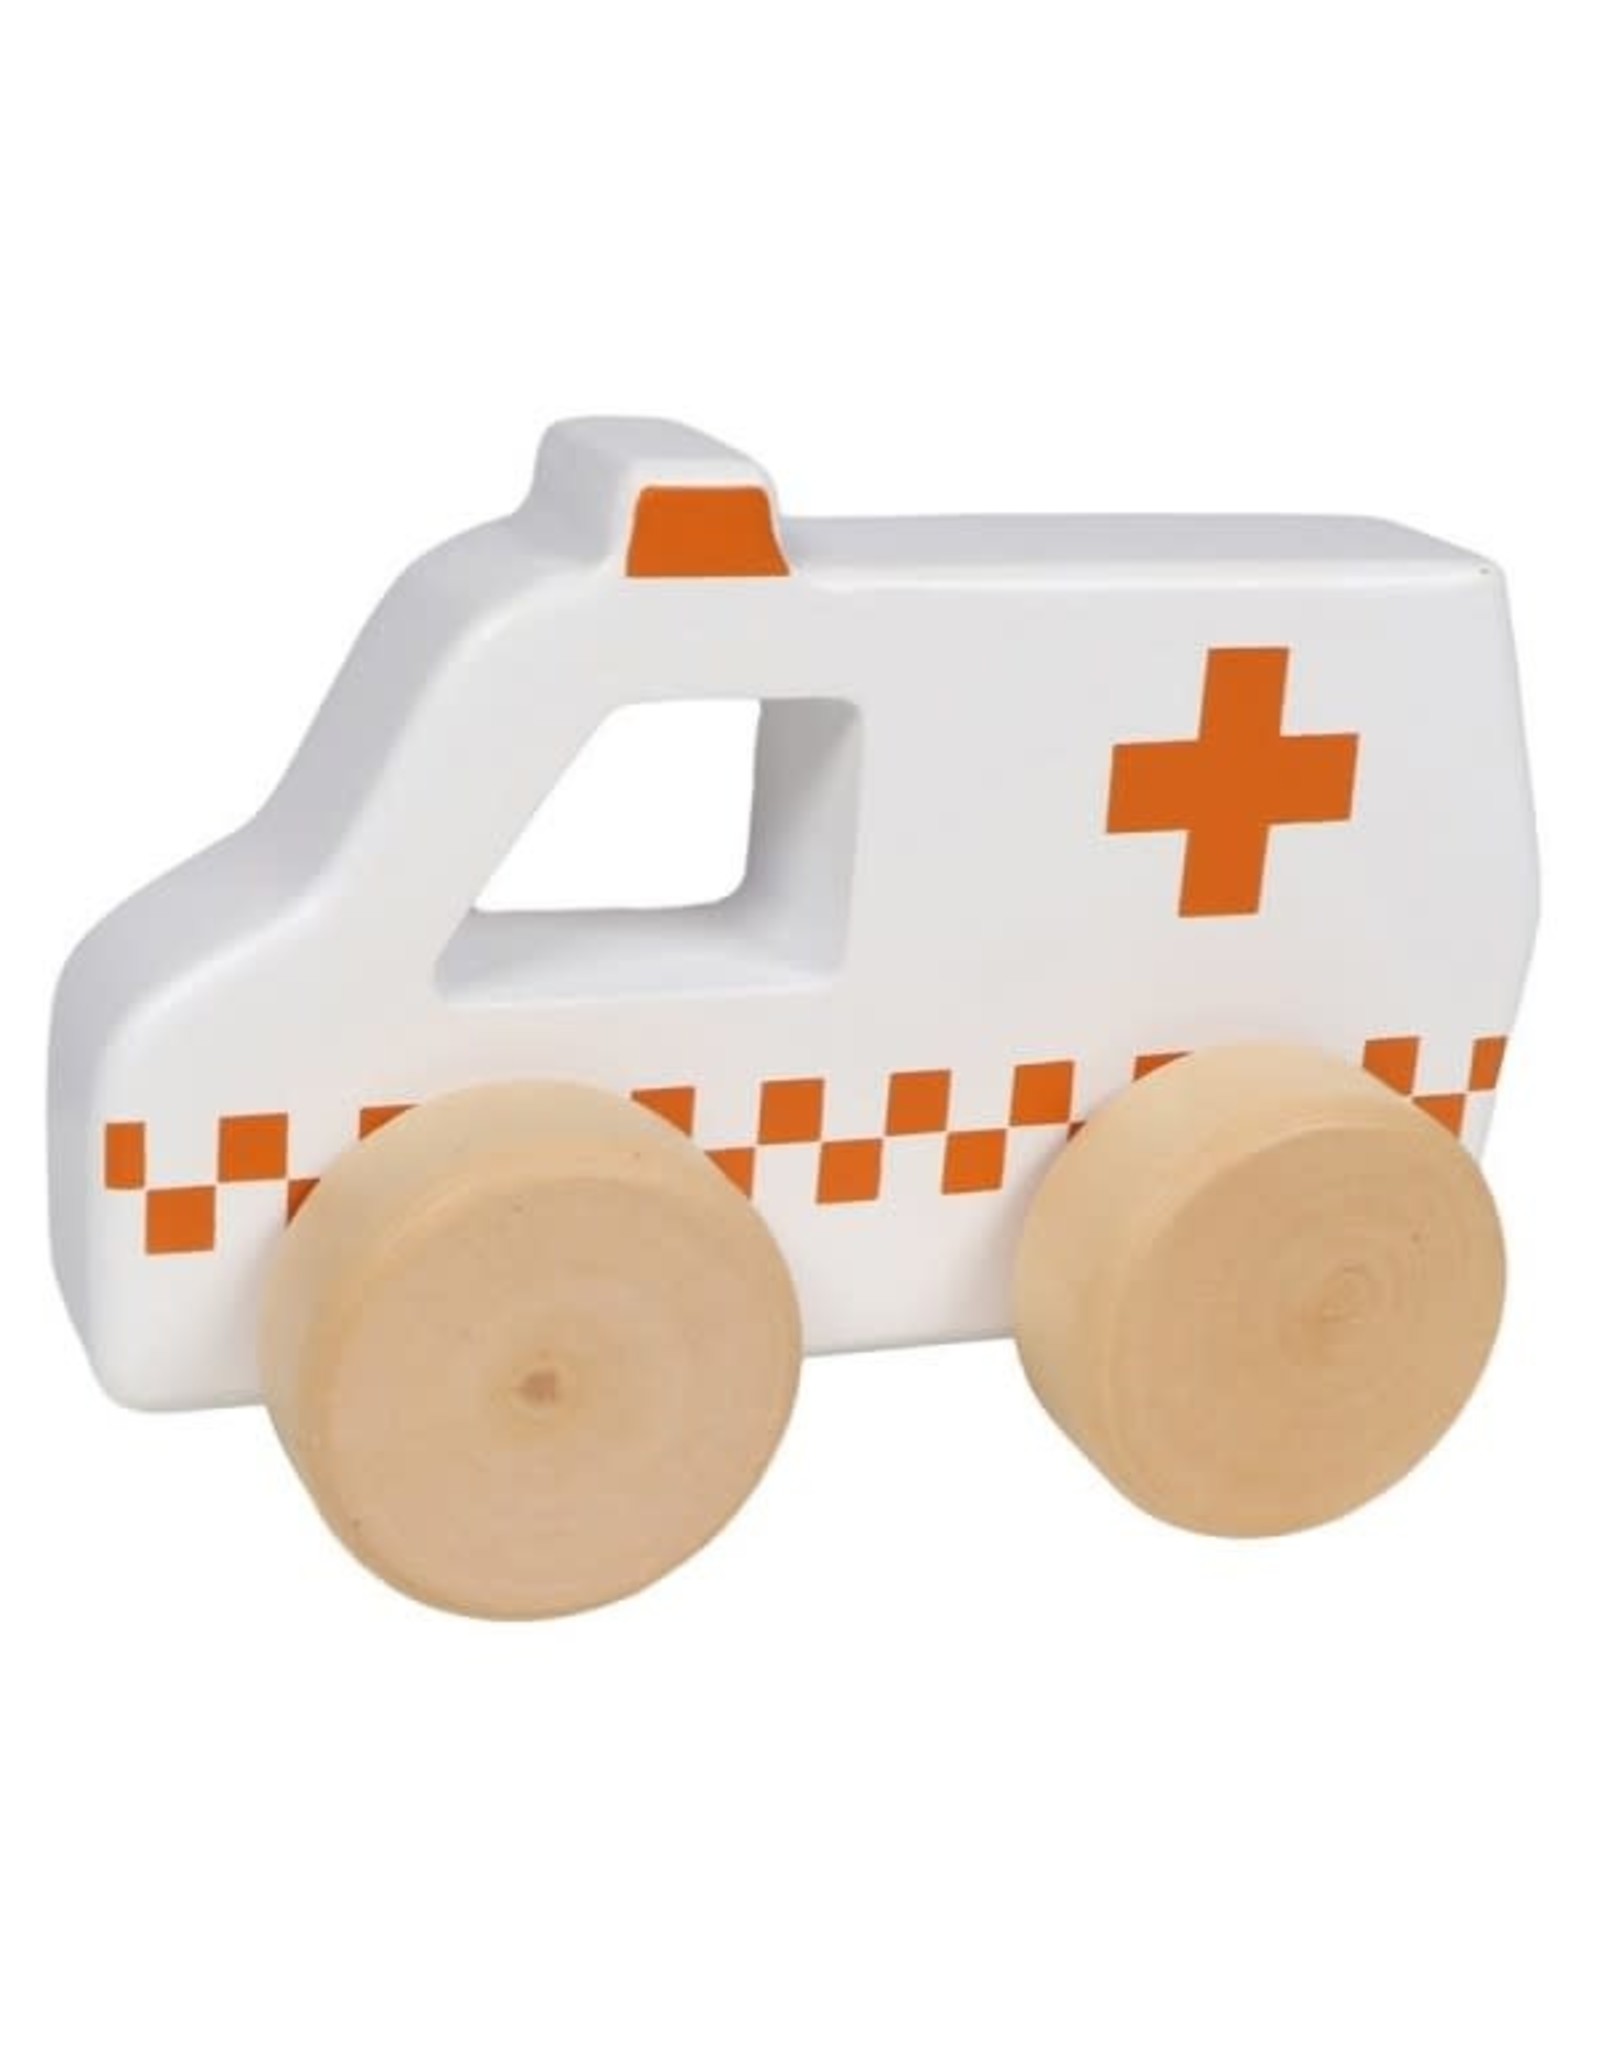 Tryco Ambulance